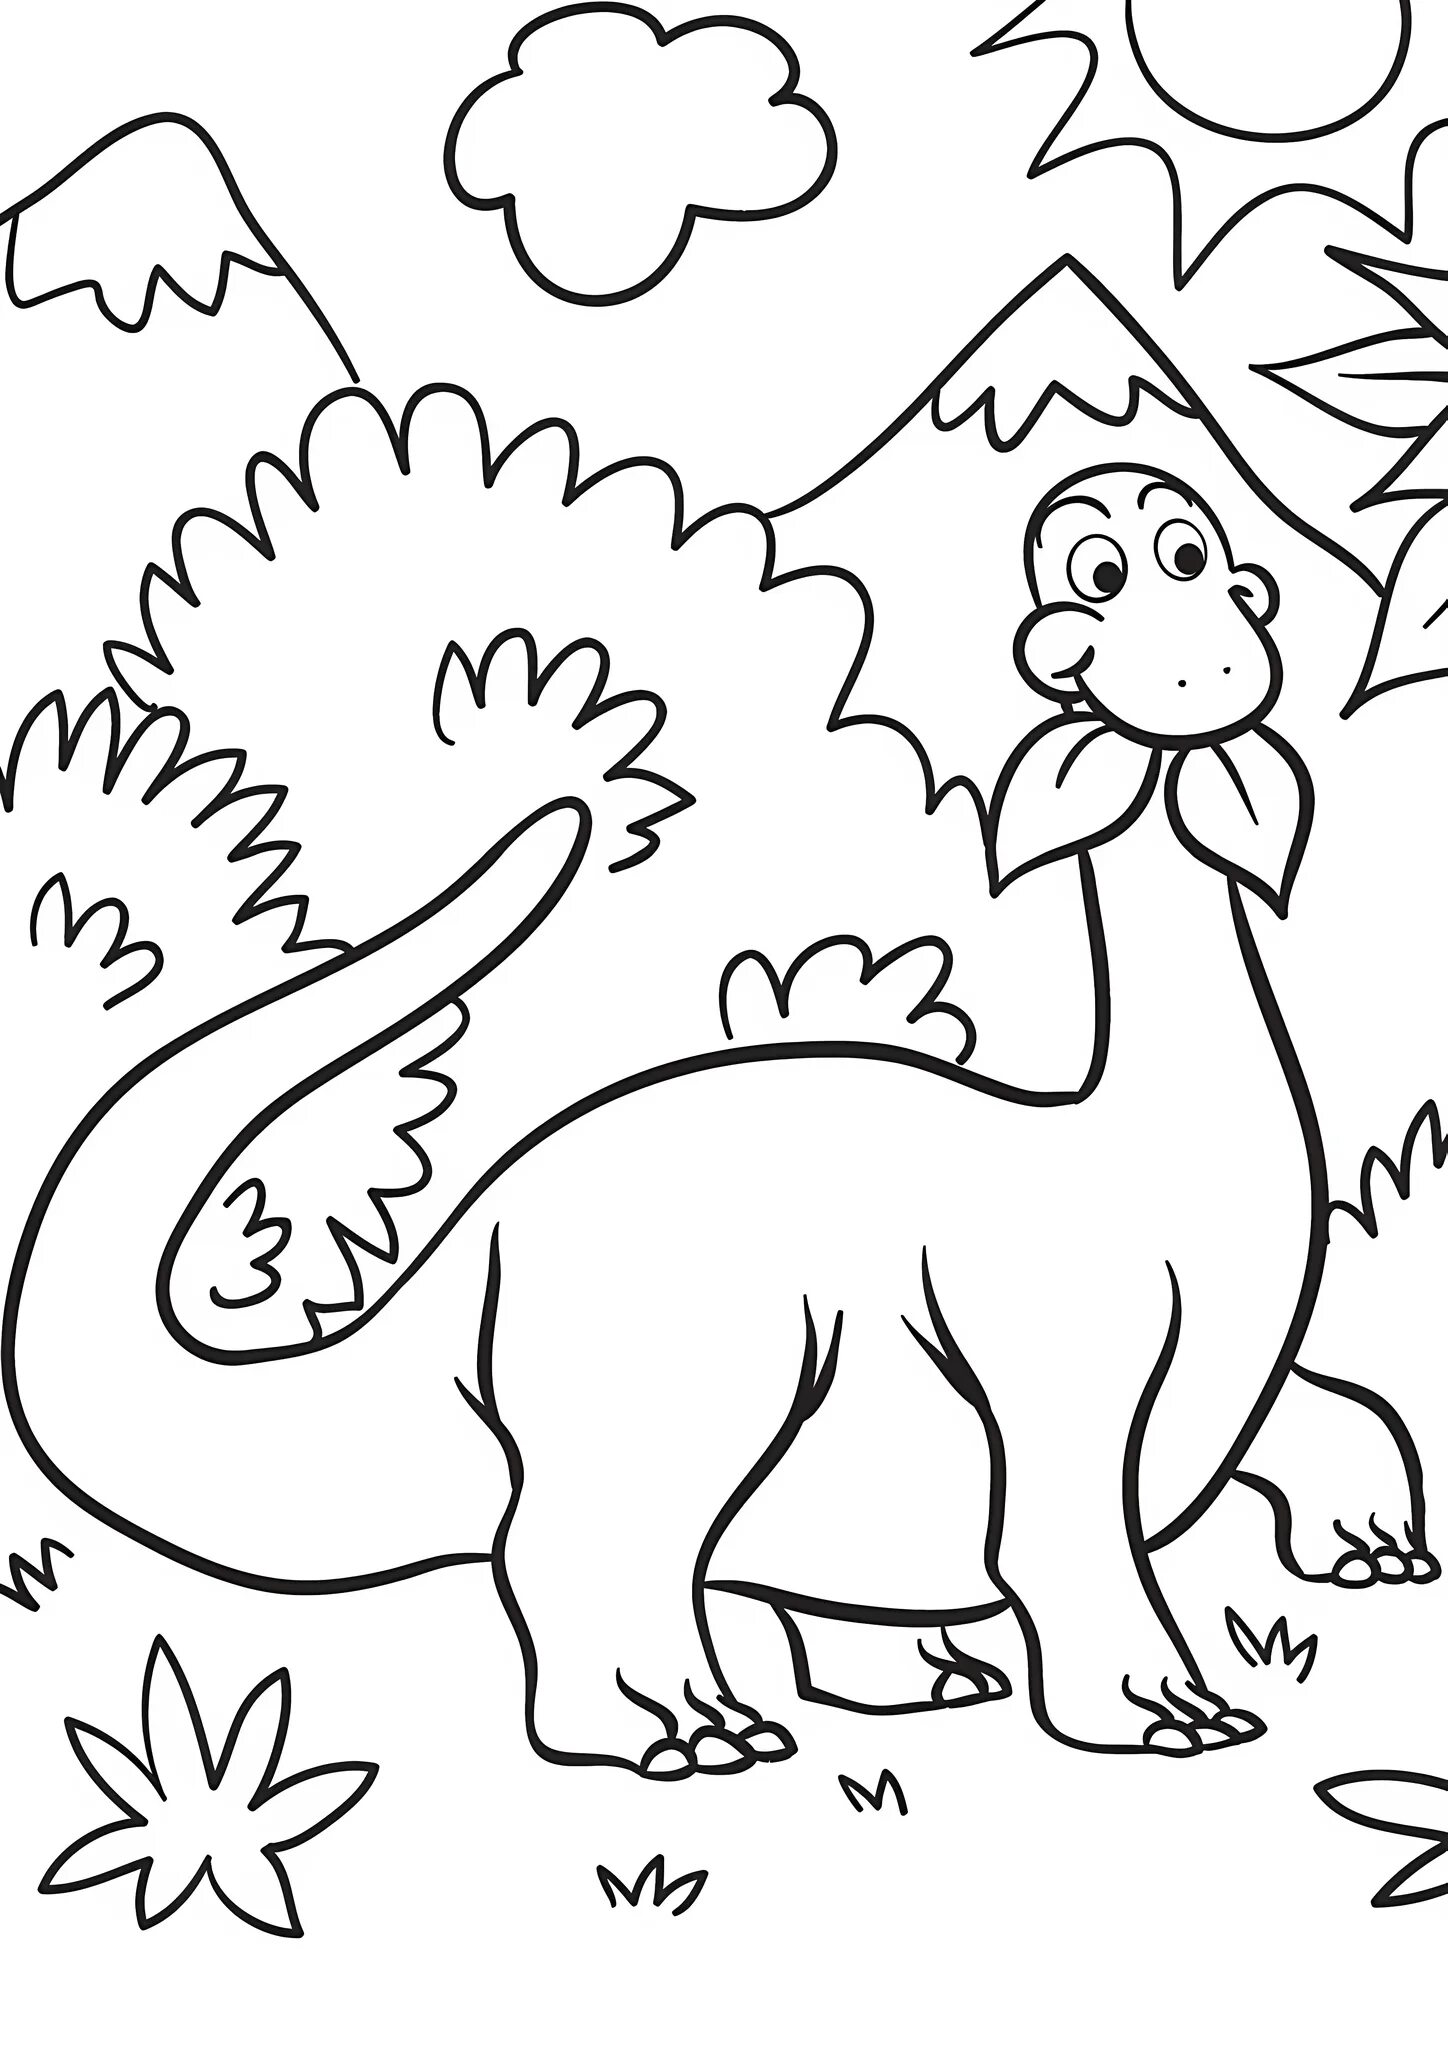 Динозавры раскраска а4. Динозавры / раскраска. Динозавры для раскрашивания детям. Динозавр раскраска для детей. Динозаврики раскраска для детей.